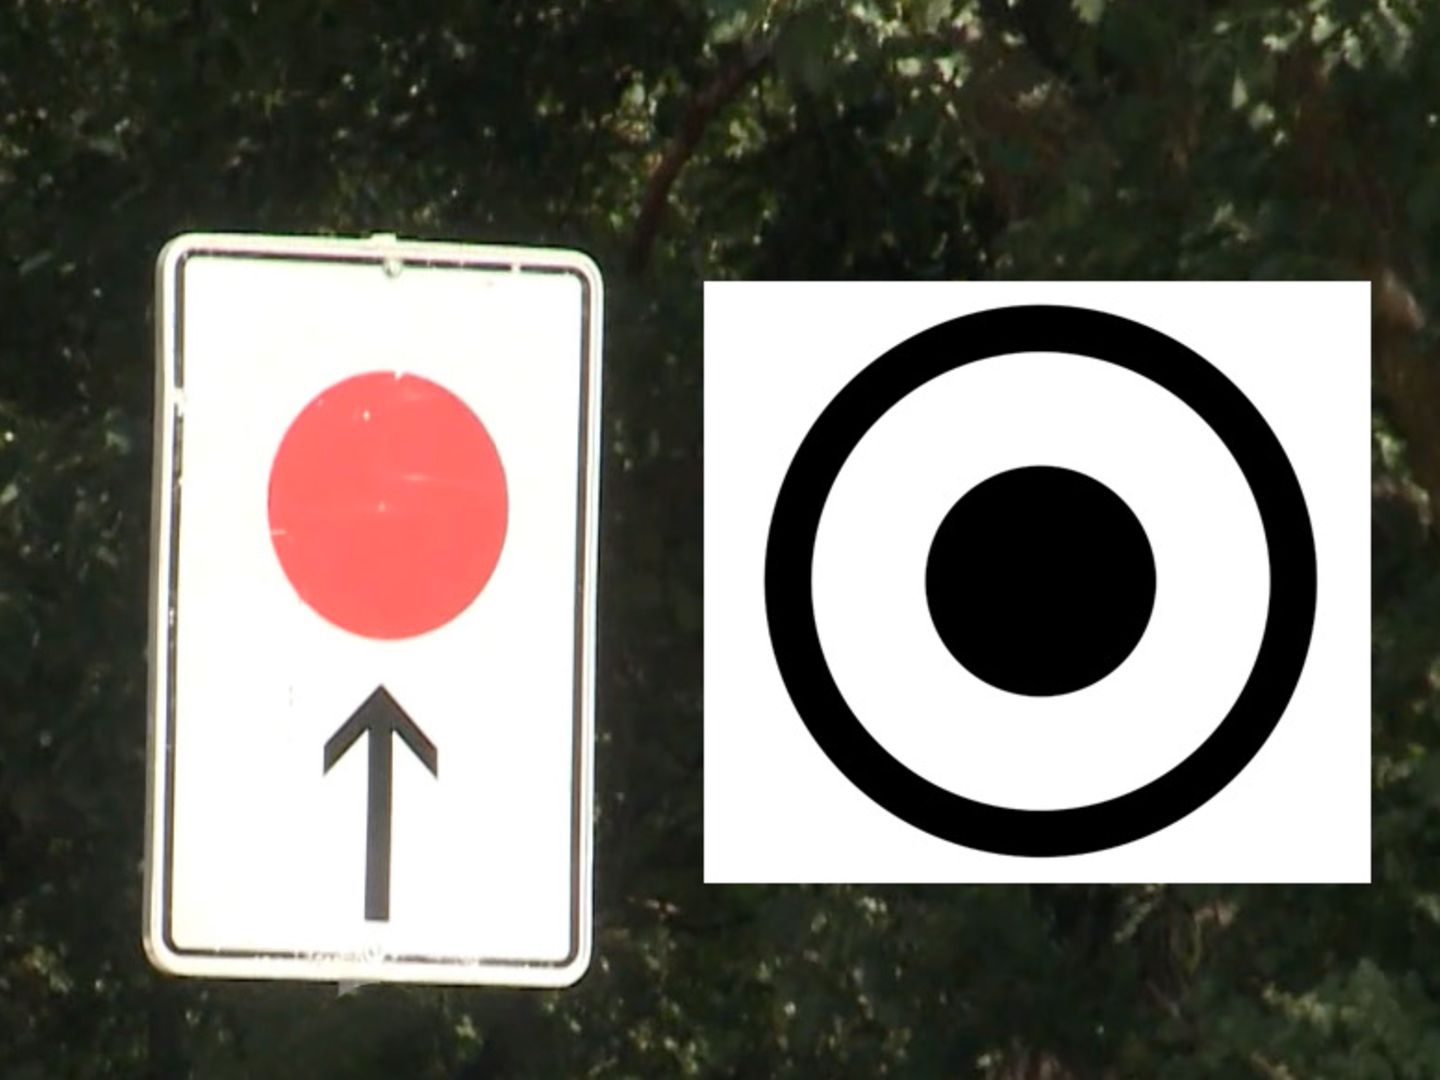 Verkehrsschild mit rotem Punkt & Pfeil: Bedeutung, Erklärung